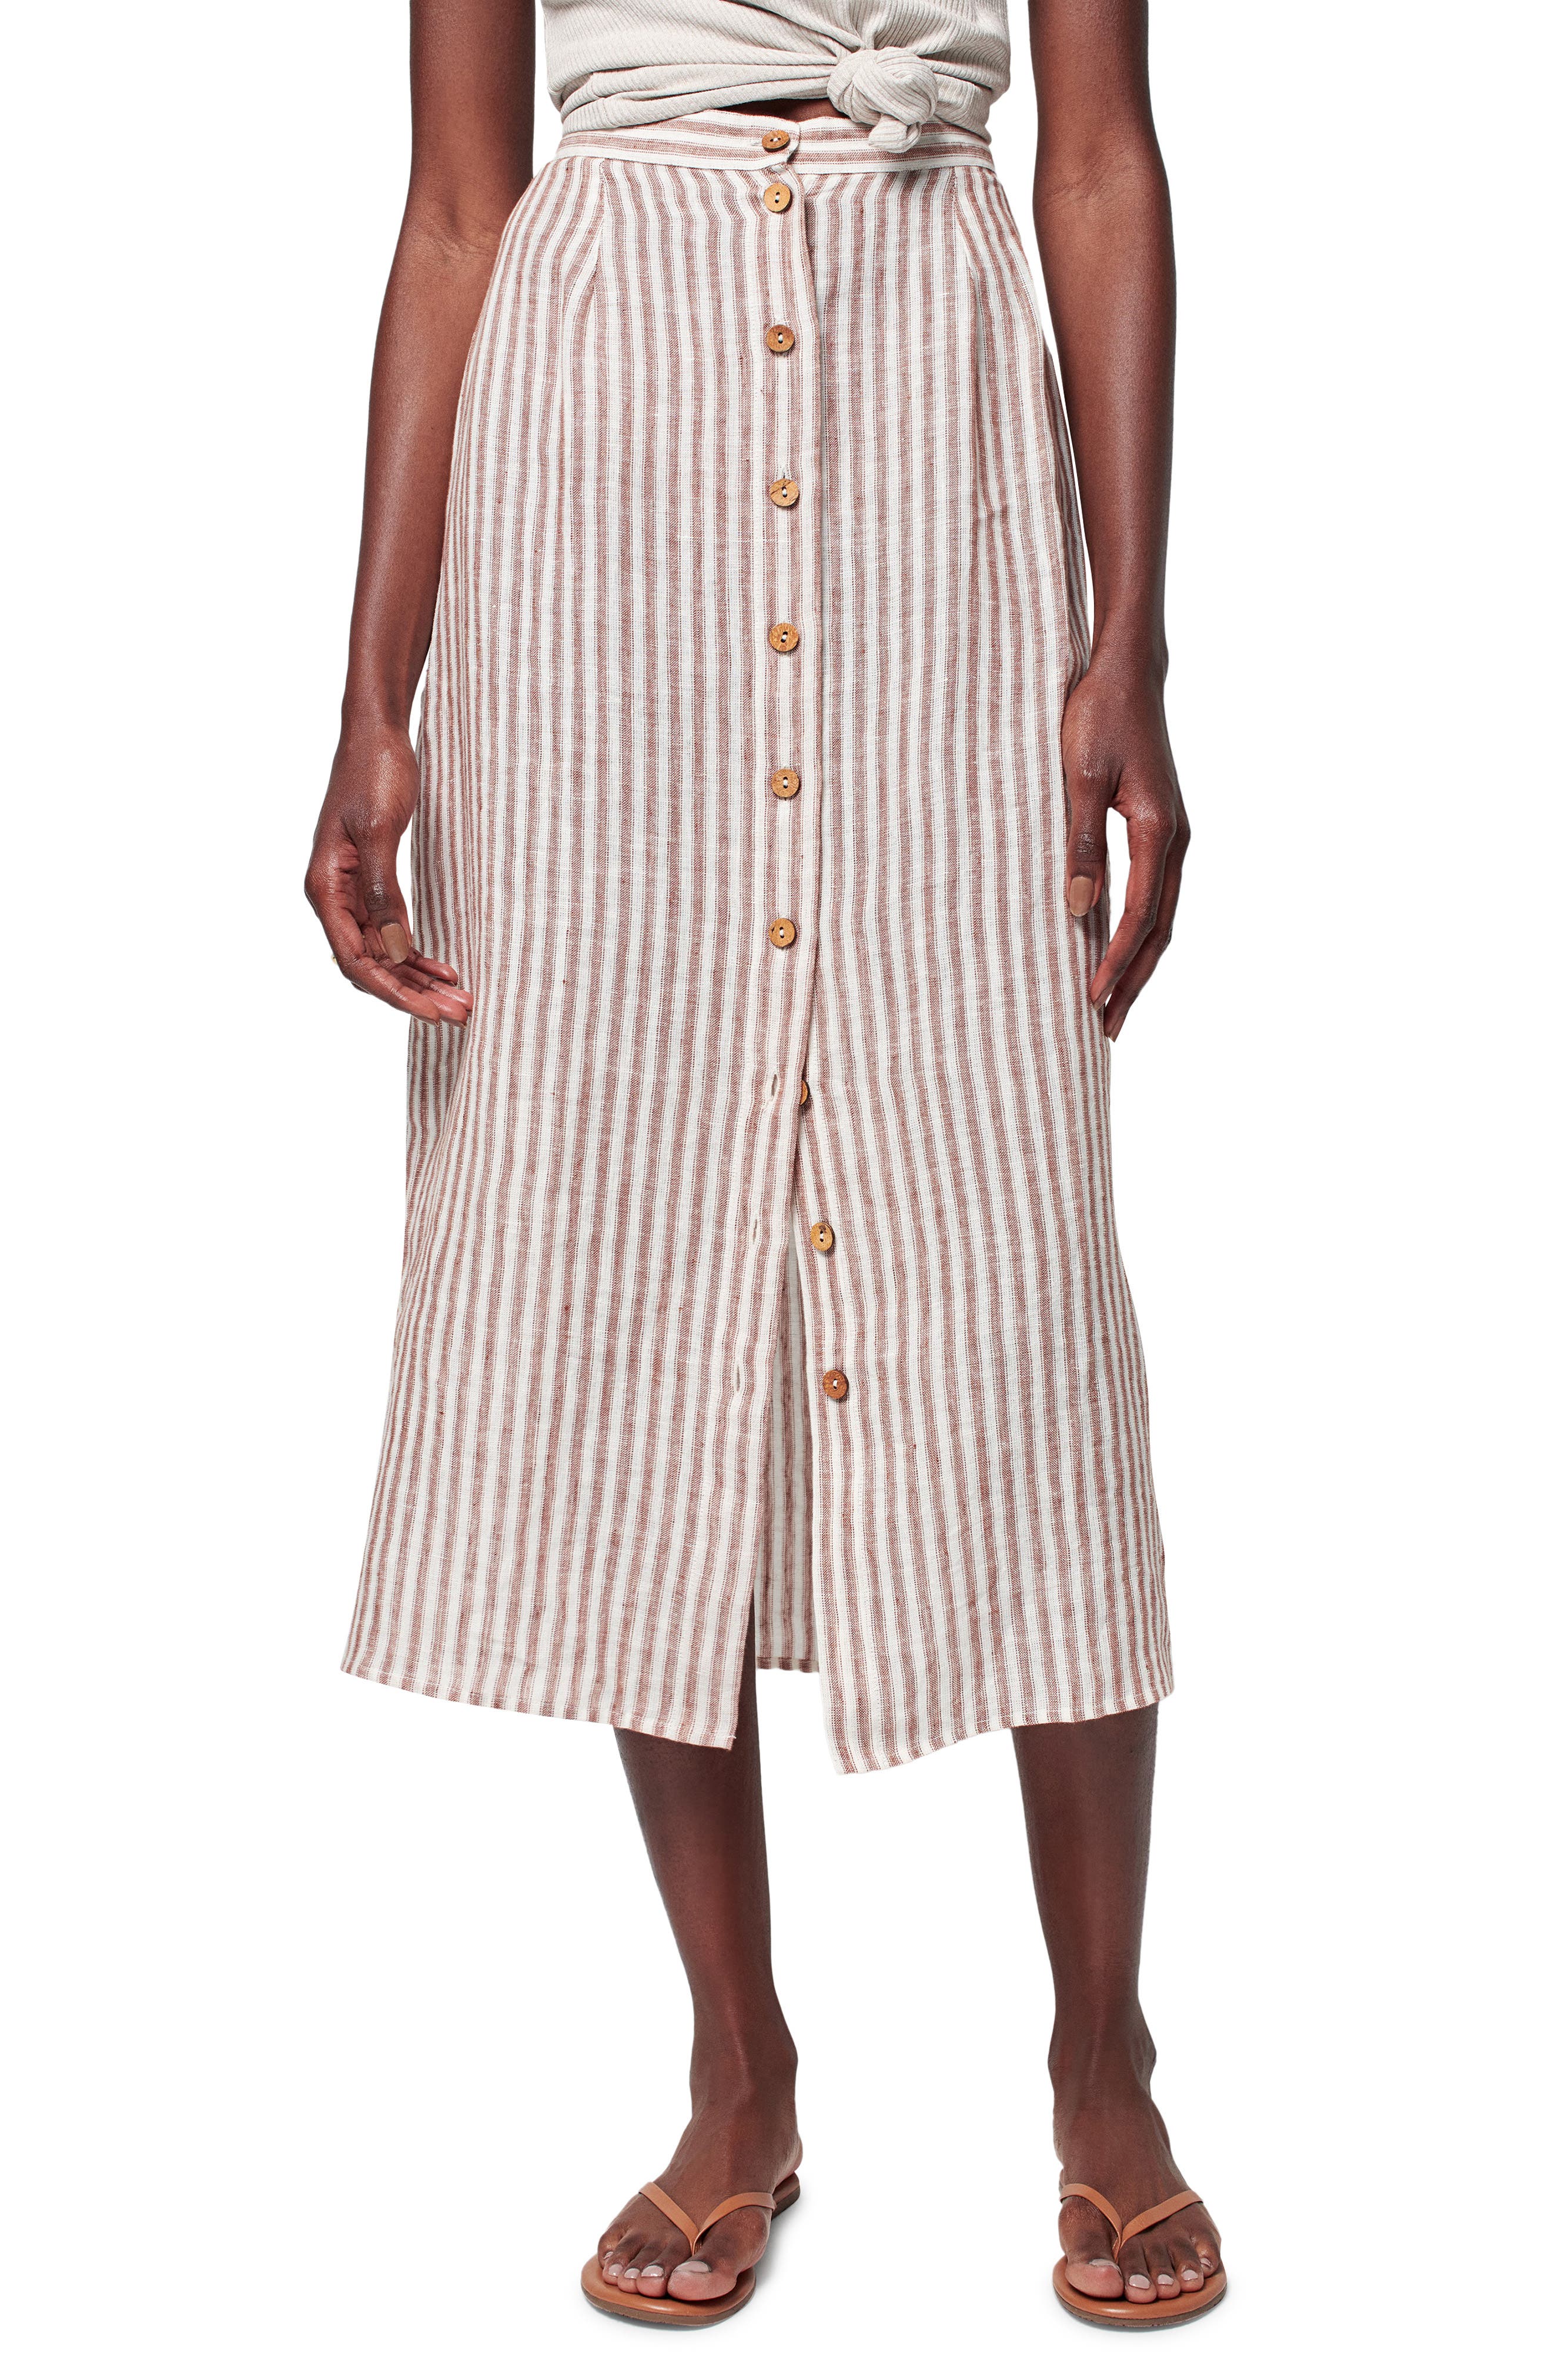 New Next Linen Blend Striped Summer Skirt Size 8-20 